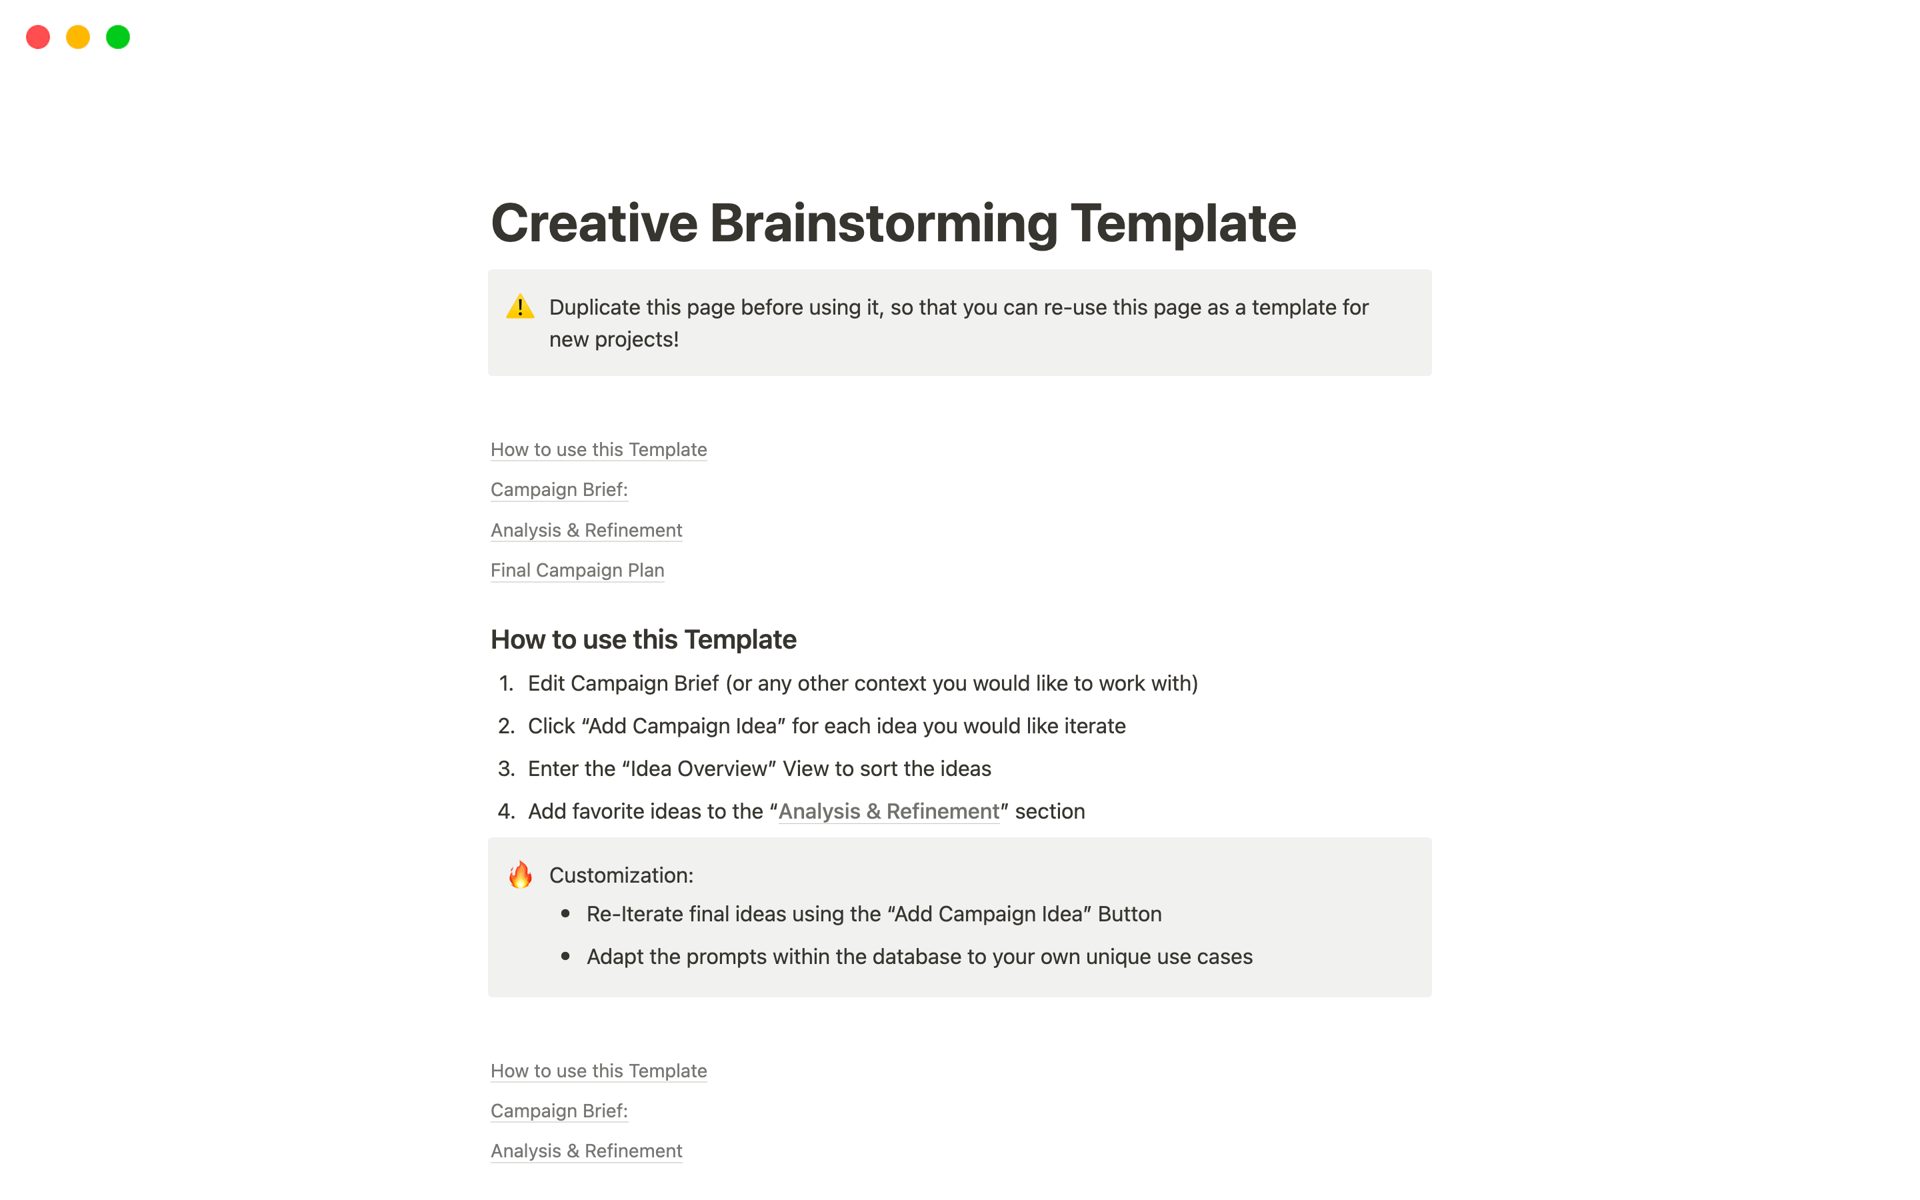 Vista previa de una plantilla para Creative Brainstorming Template 